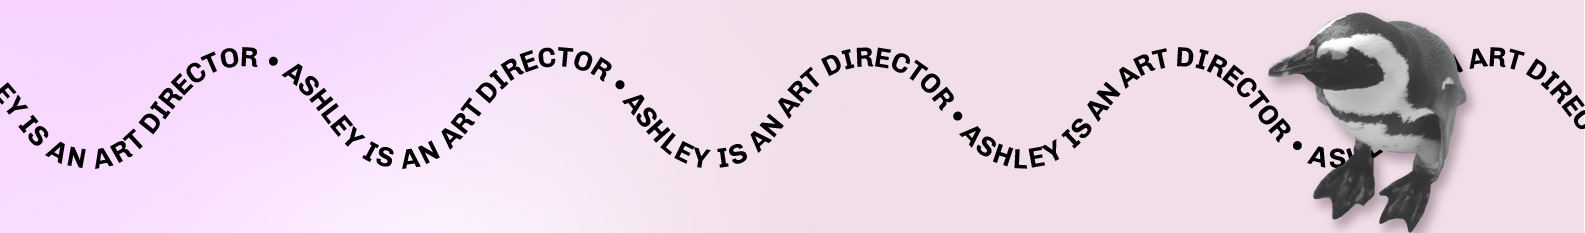 Ashley Aviles's profile banner